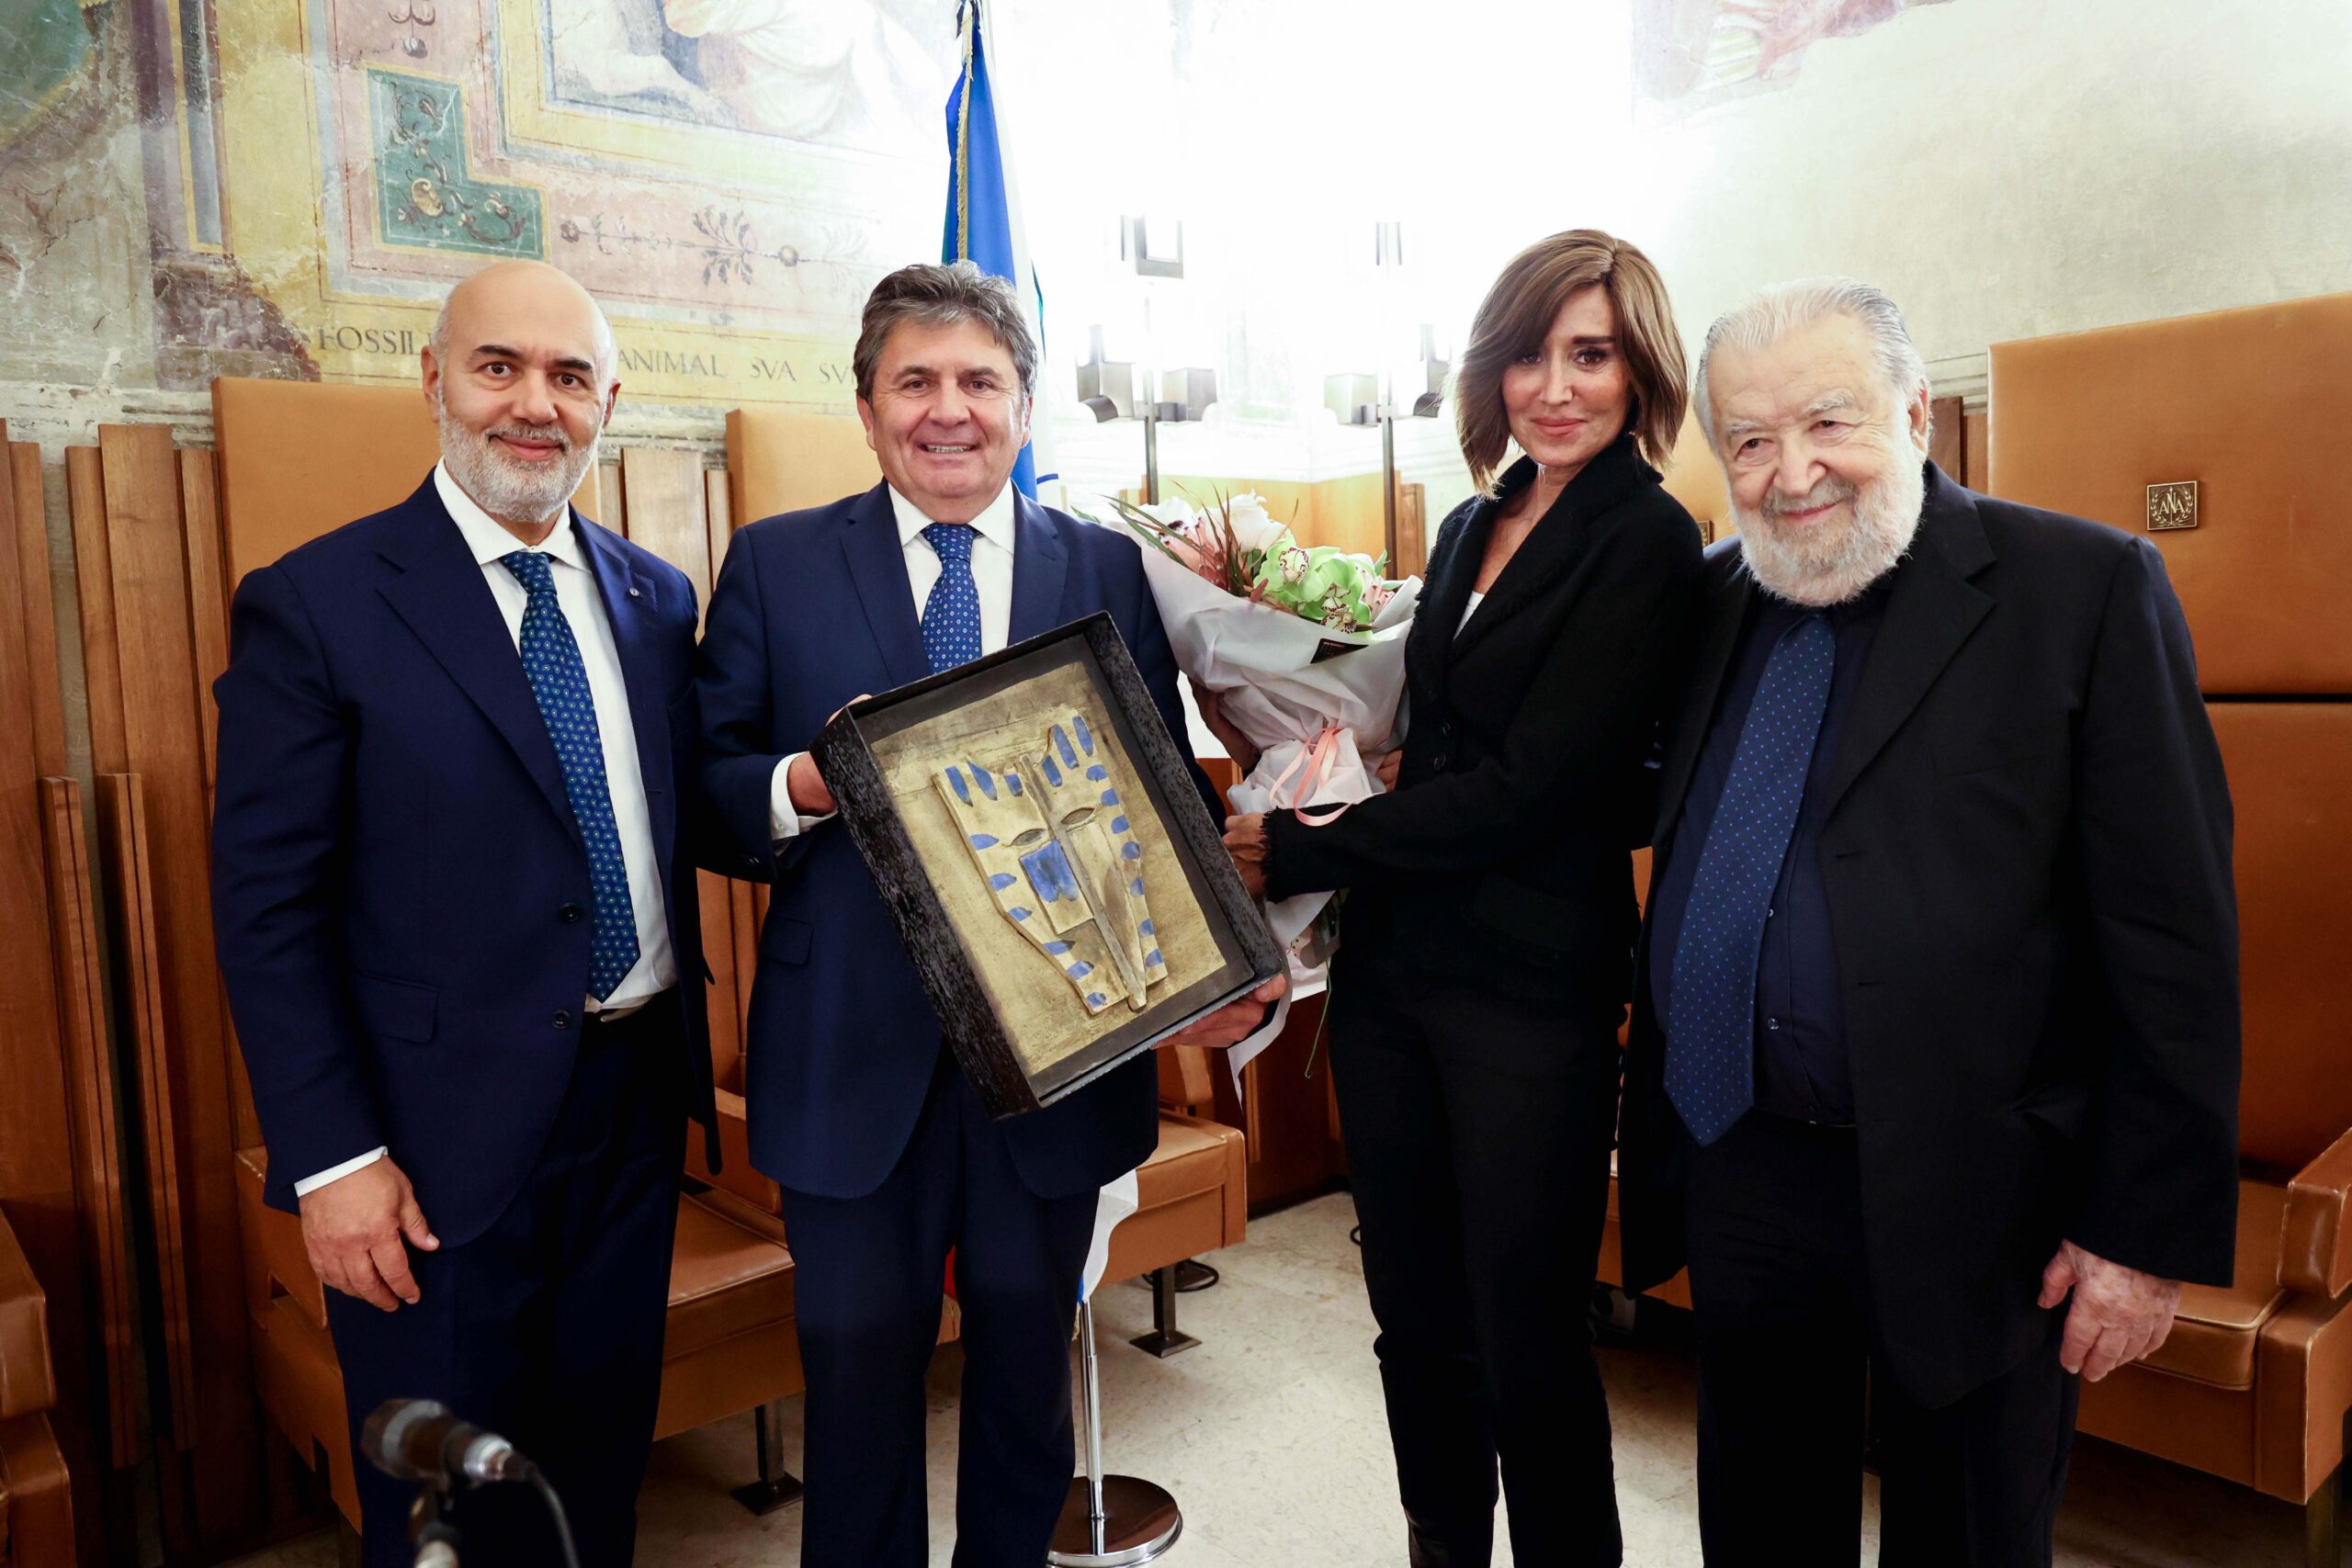 Premio Confartigianato Cultura 2022 Pupi Avati Bologna Davide Servadei, Amilcare Renzi, Anna Maria Bernini e Pupi Avati